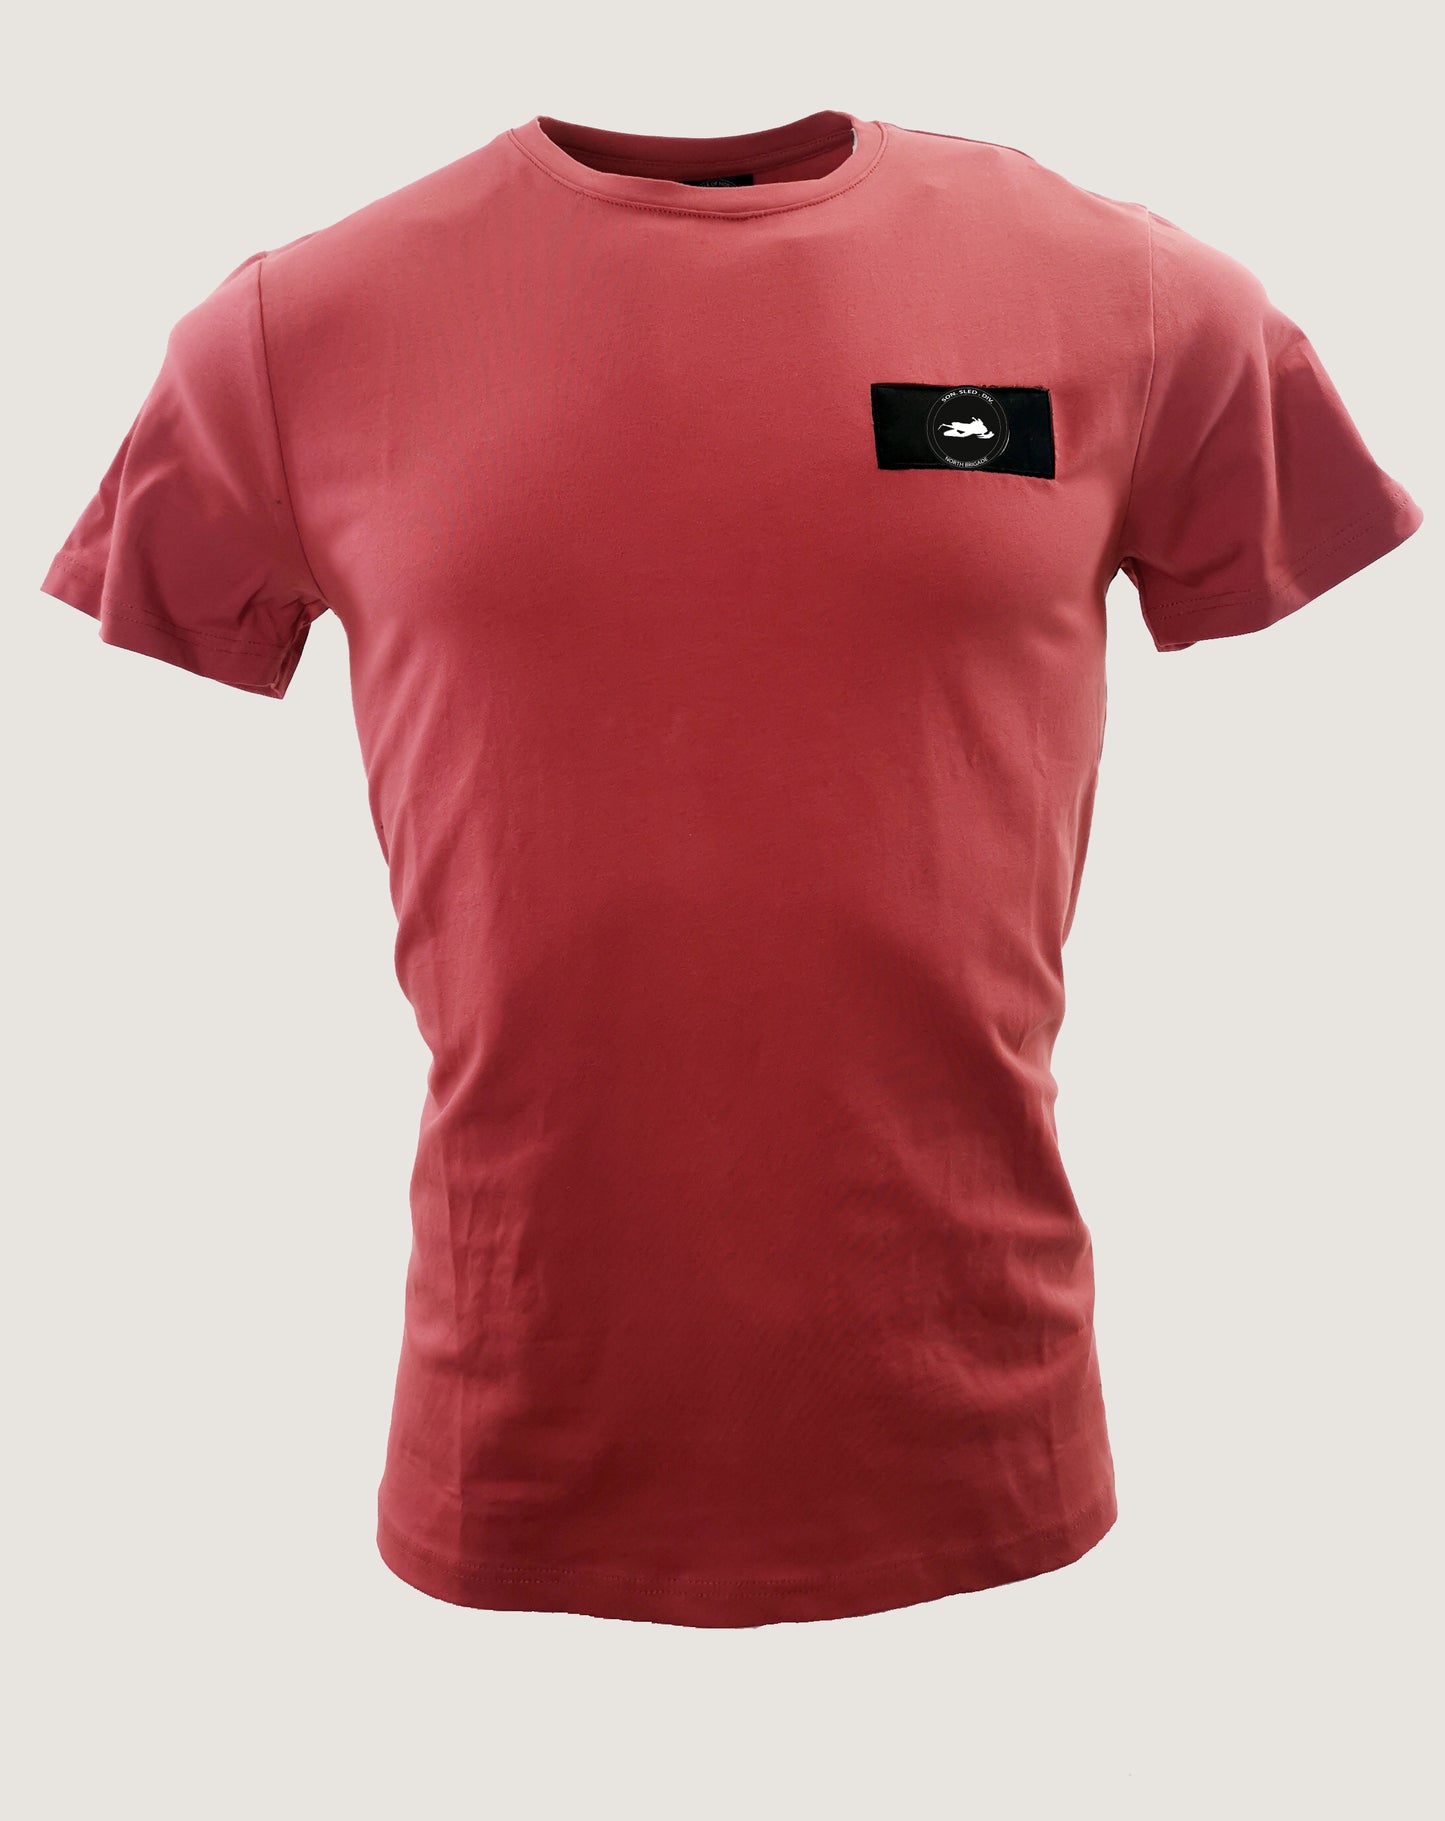 Skoter badge t-shirt slim fit röd